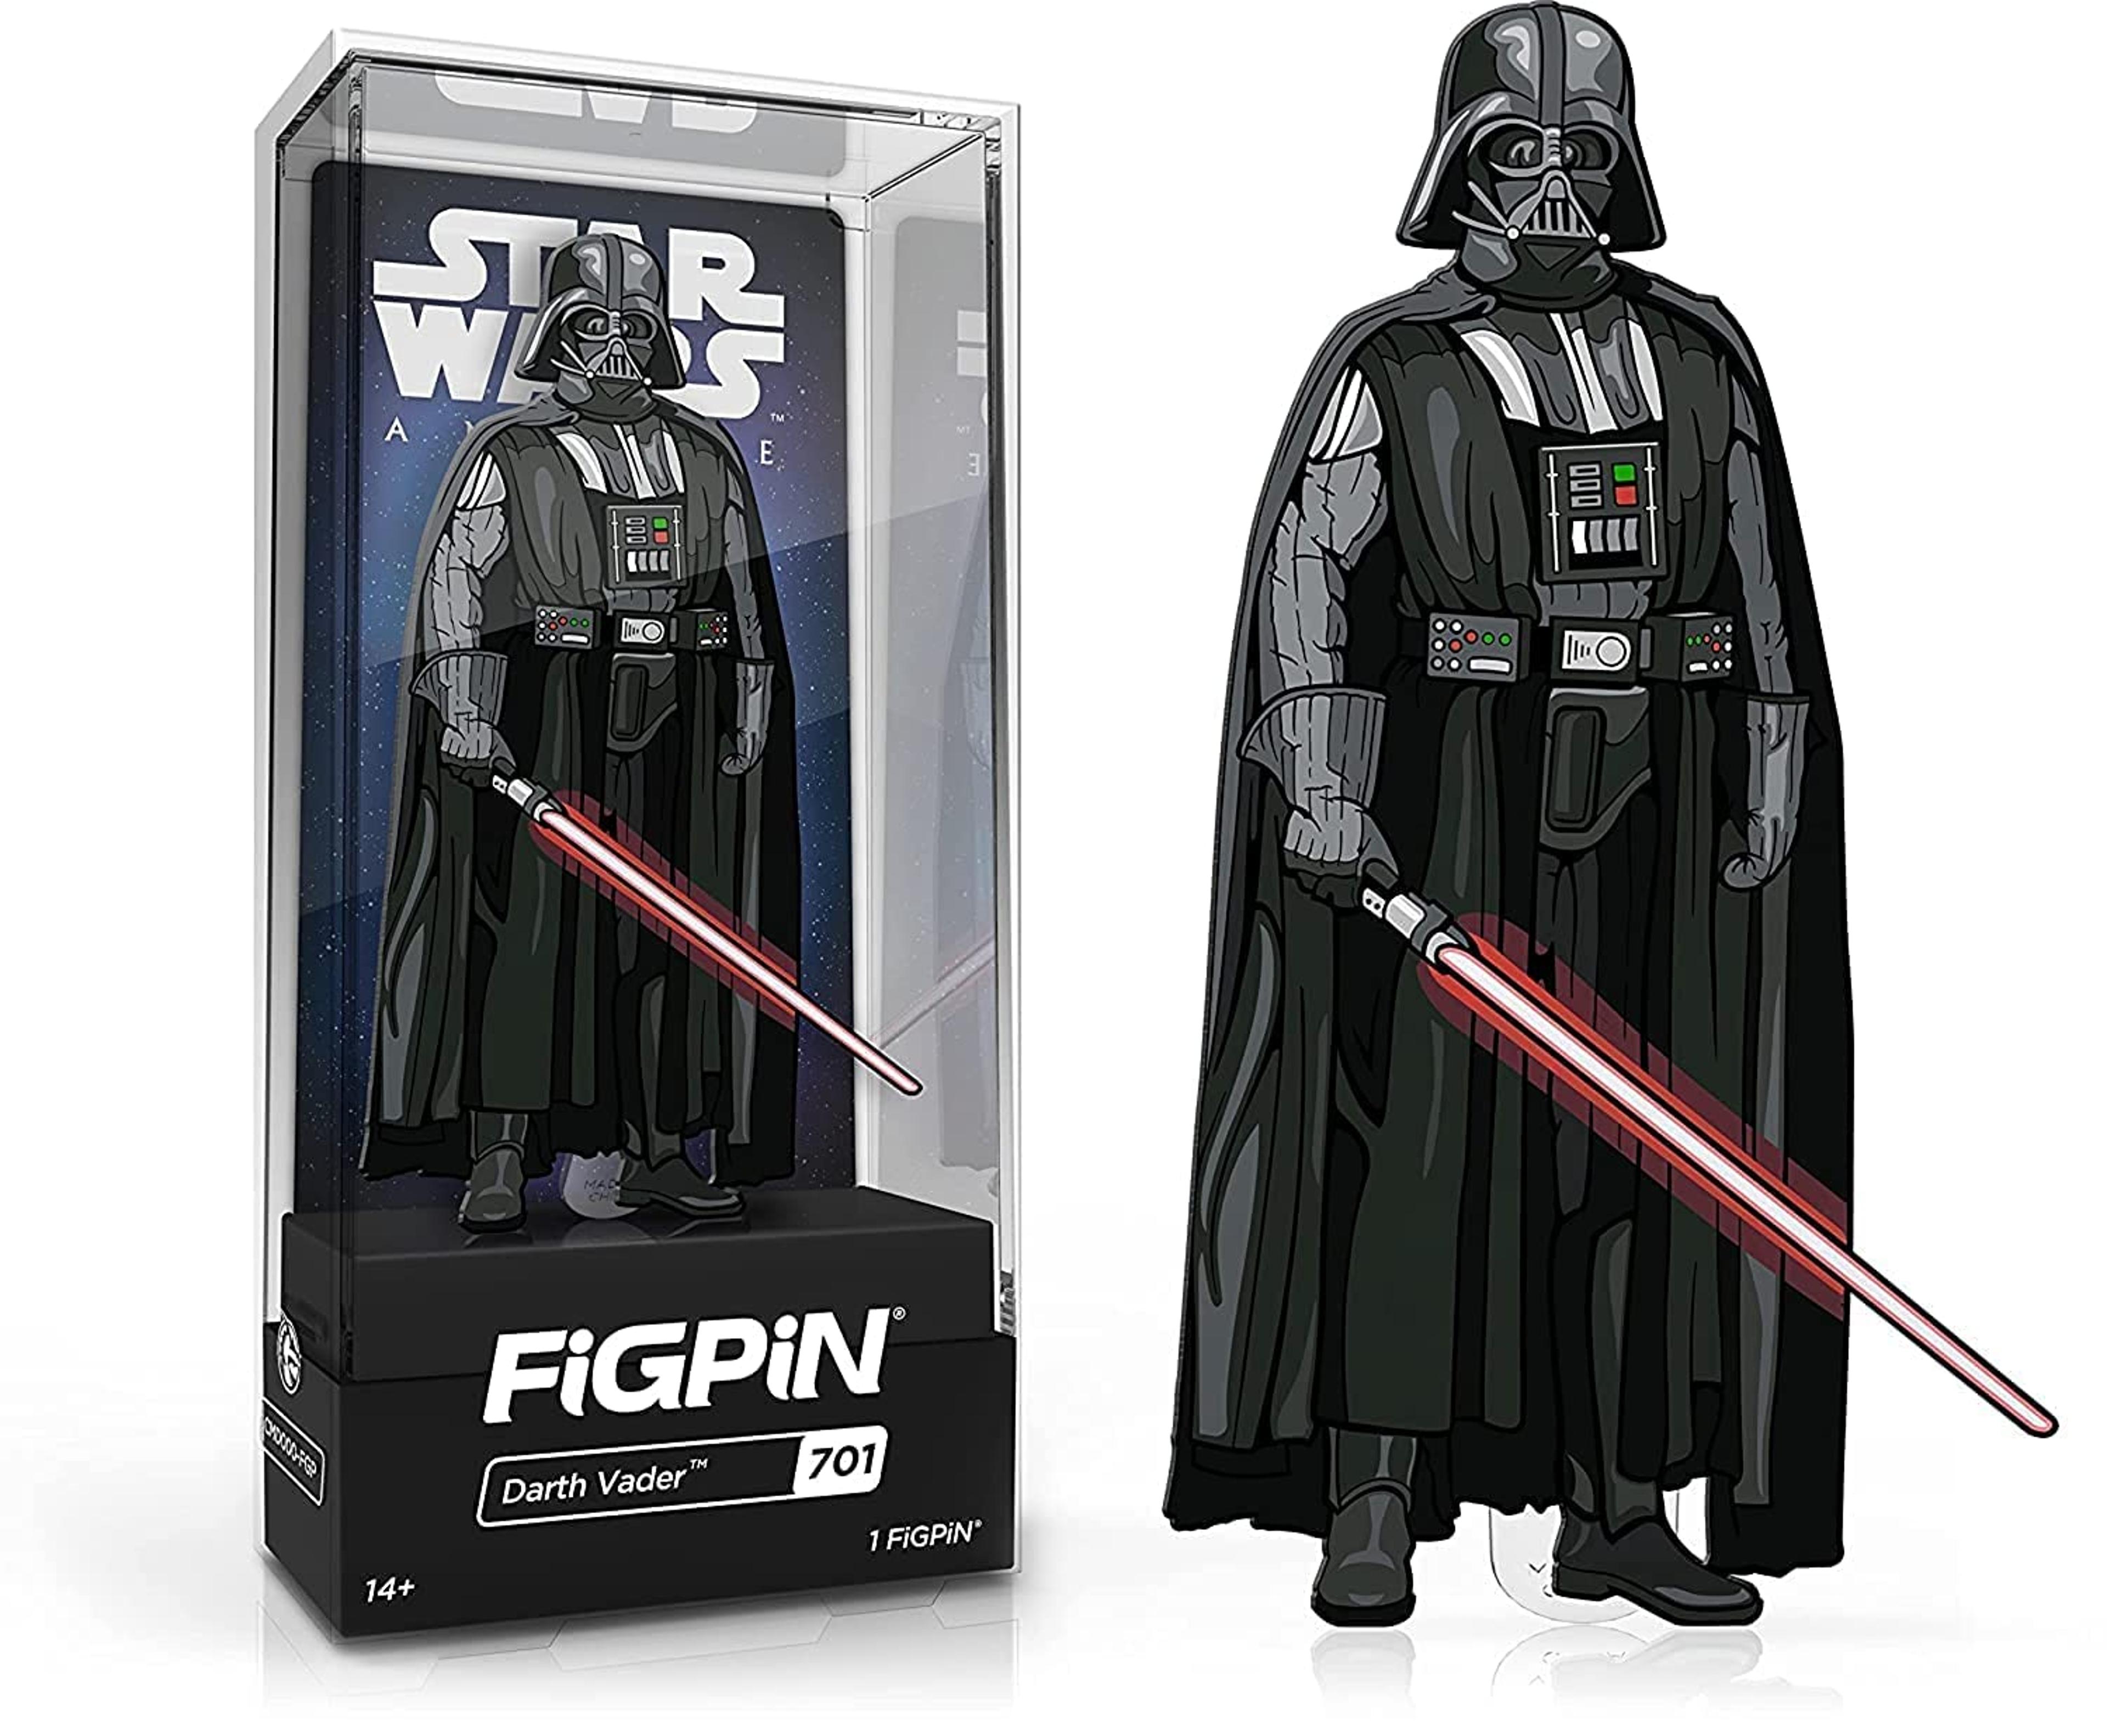 FiGPiN Star Wars A New Hope - Darth Vader #701